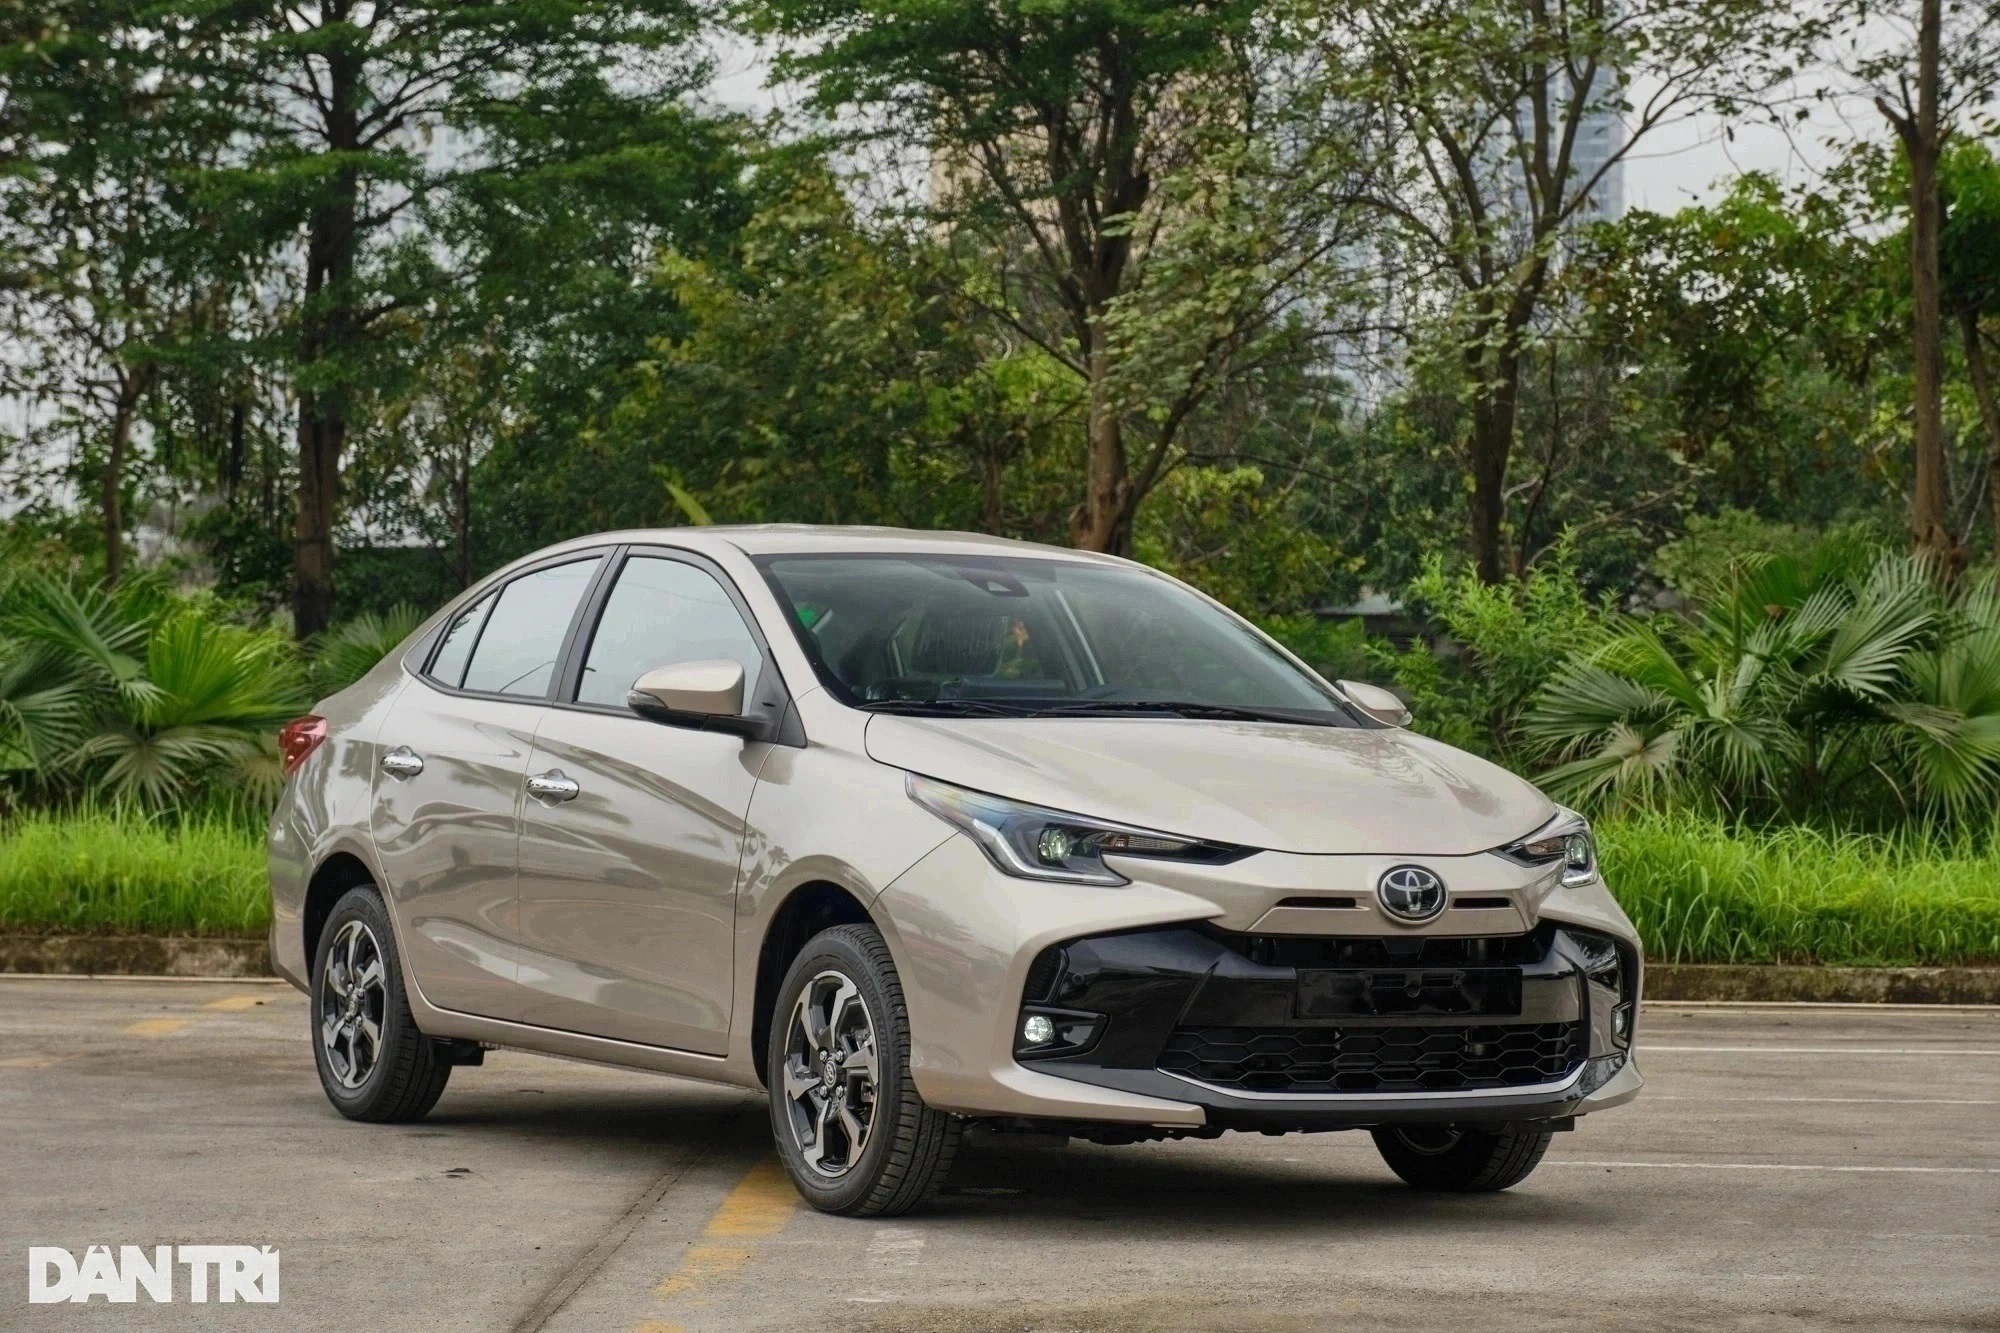 Lúc mới ra mắt Việt Nam, thiết kế của Toyota Vios hiện hành từng gặp nhiều tranh cãi. Số đông người dùng cho rằng đời cũ bắt mắt hơn (Ảnh: Nguyễn Lâm).